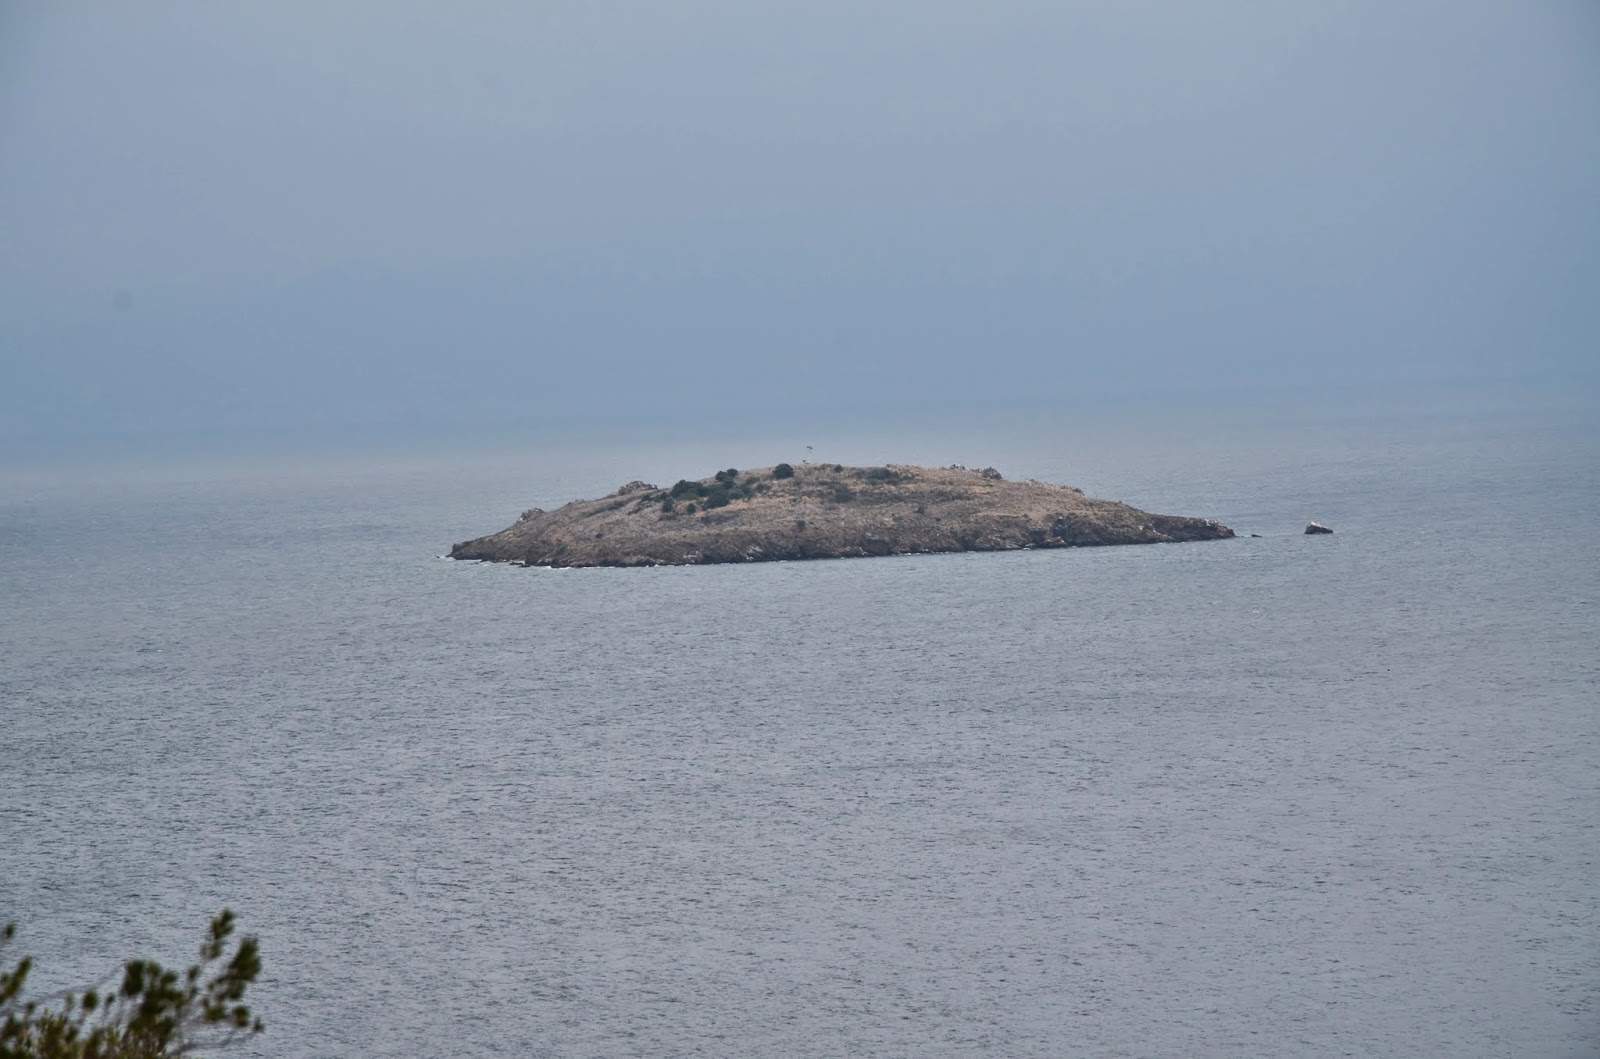 Tavşan Adası at Princes' Islands, Istanbul, Turkey